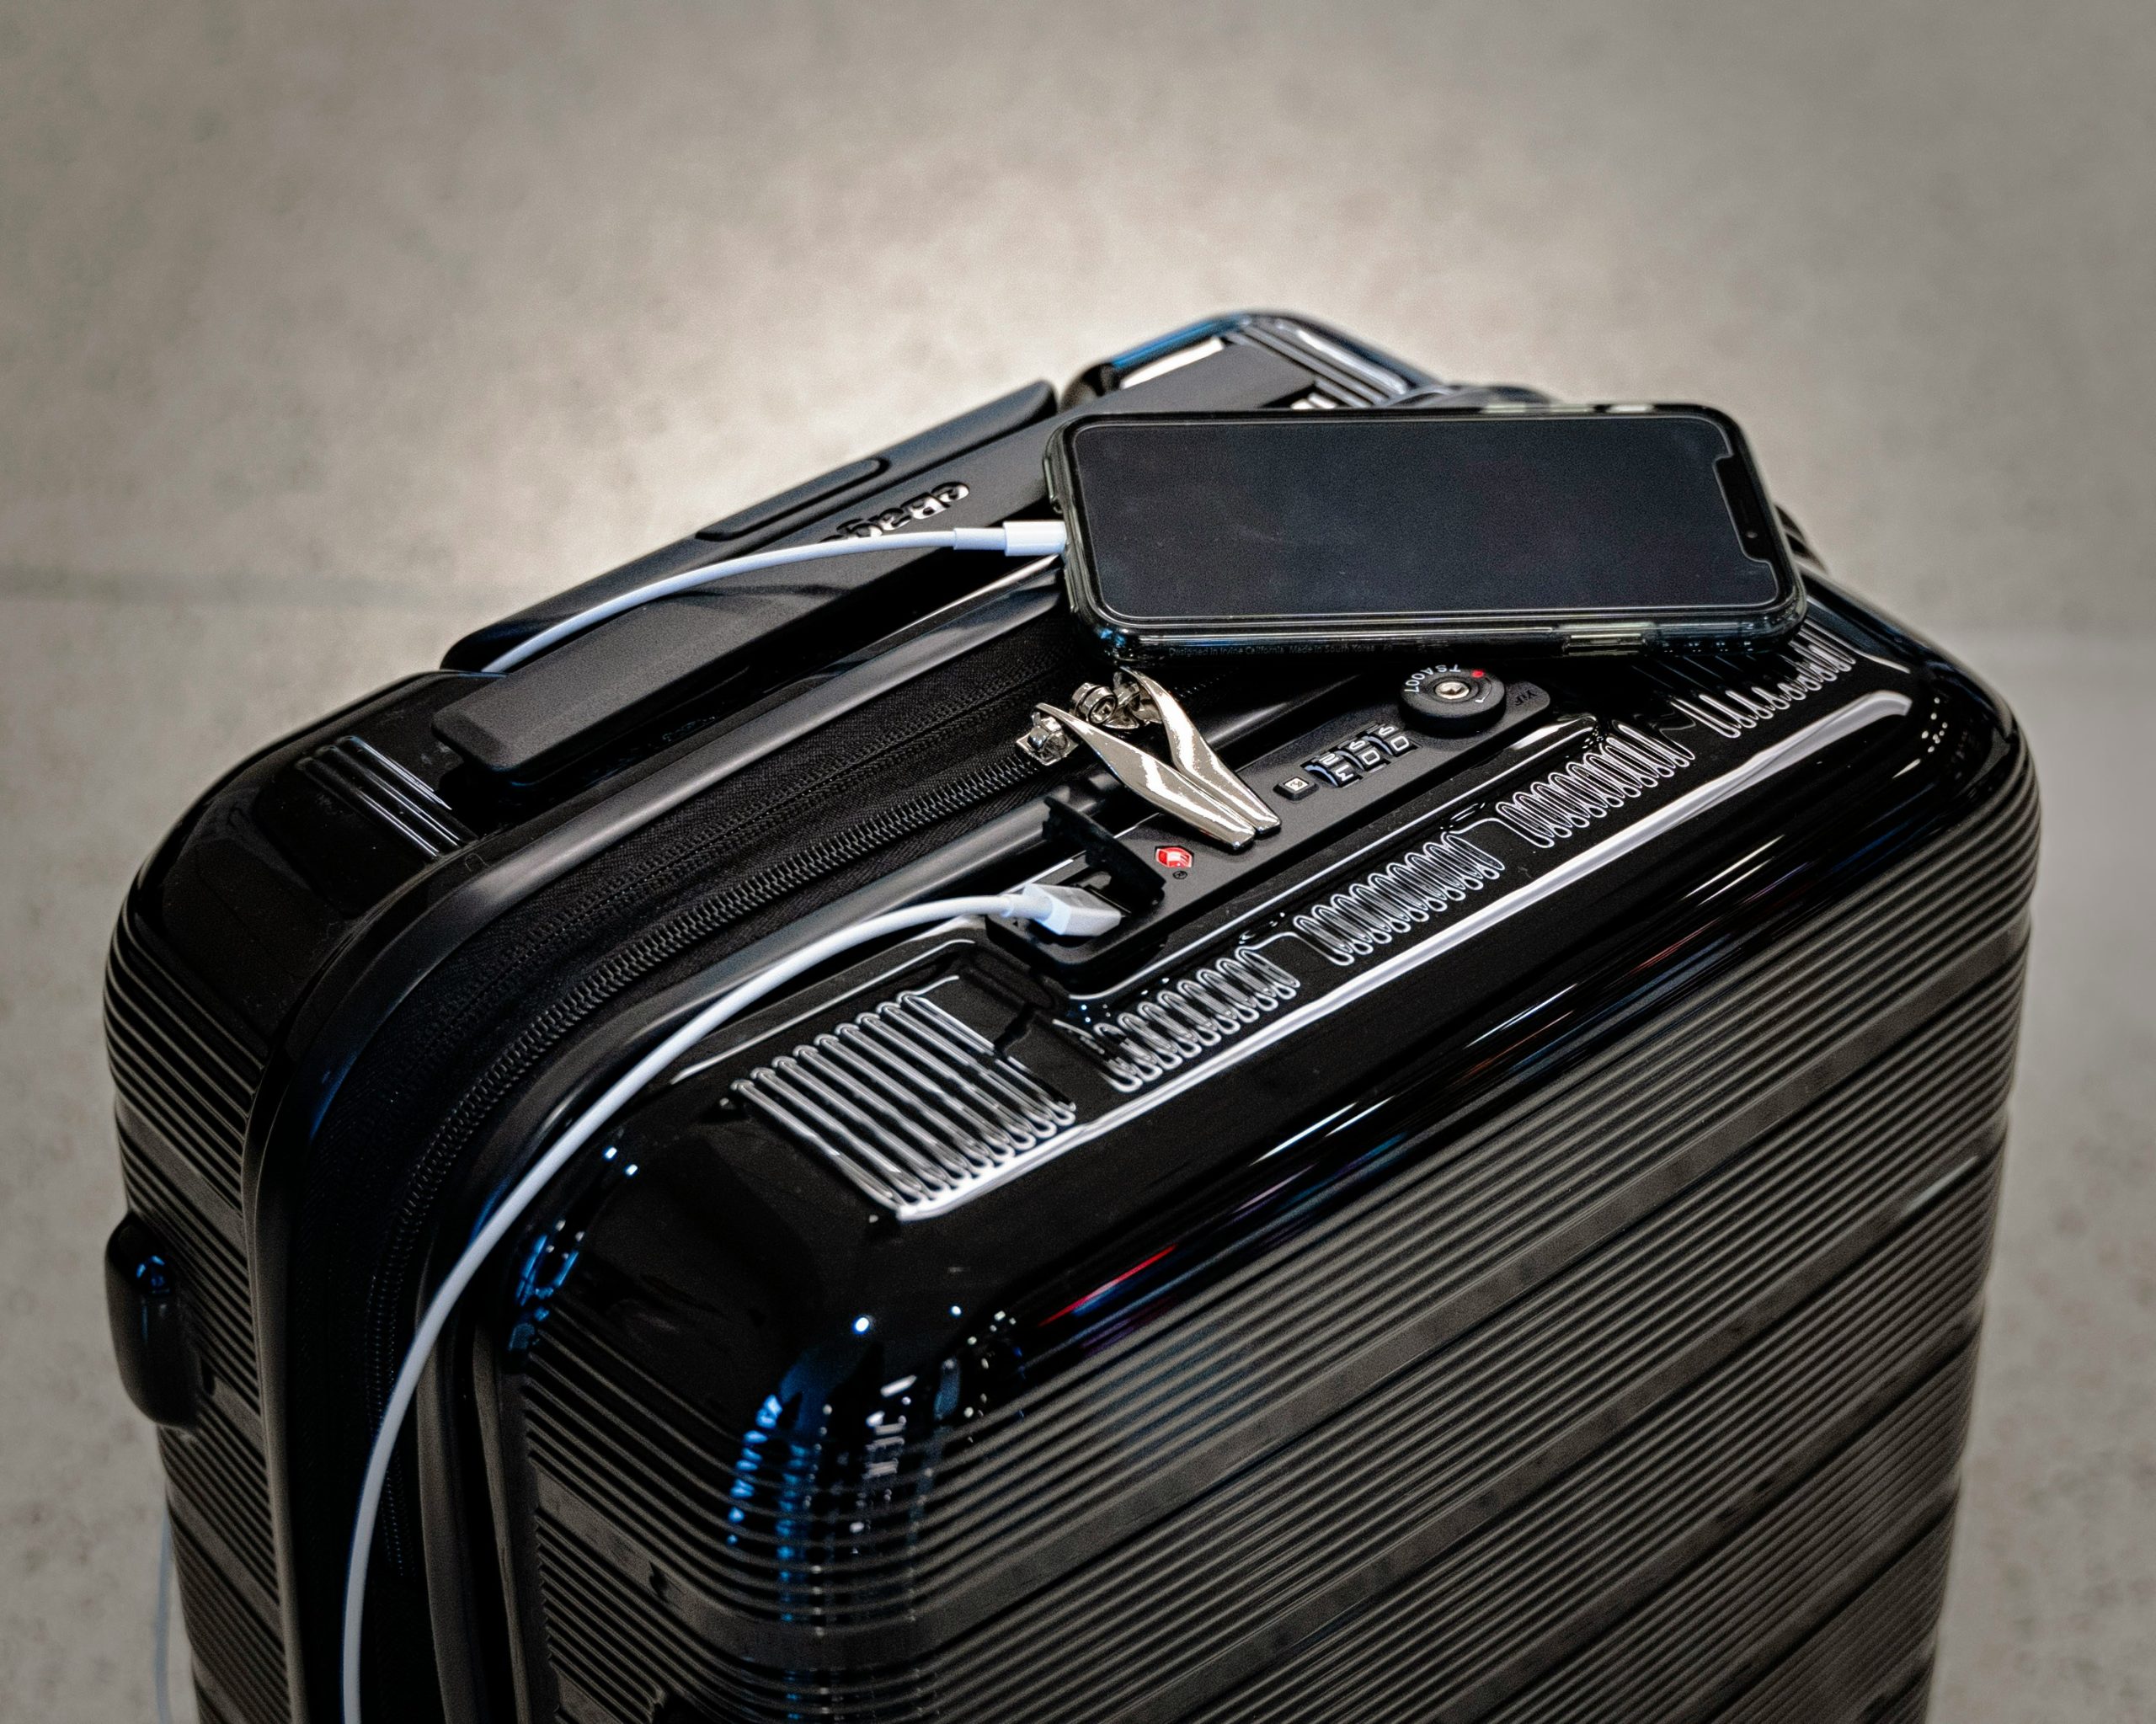 découvrez notre sélection de valises de voyage pour un séjour parfaitement organisé et sans stress.